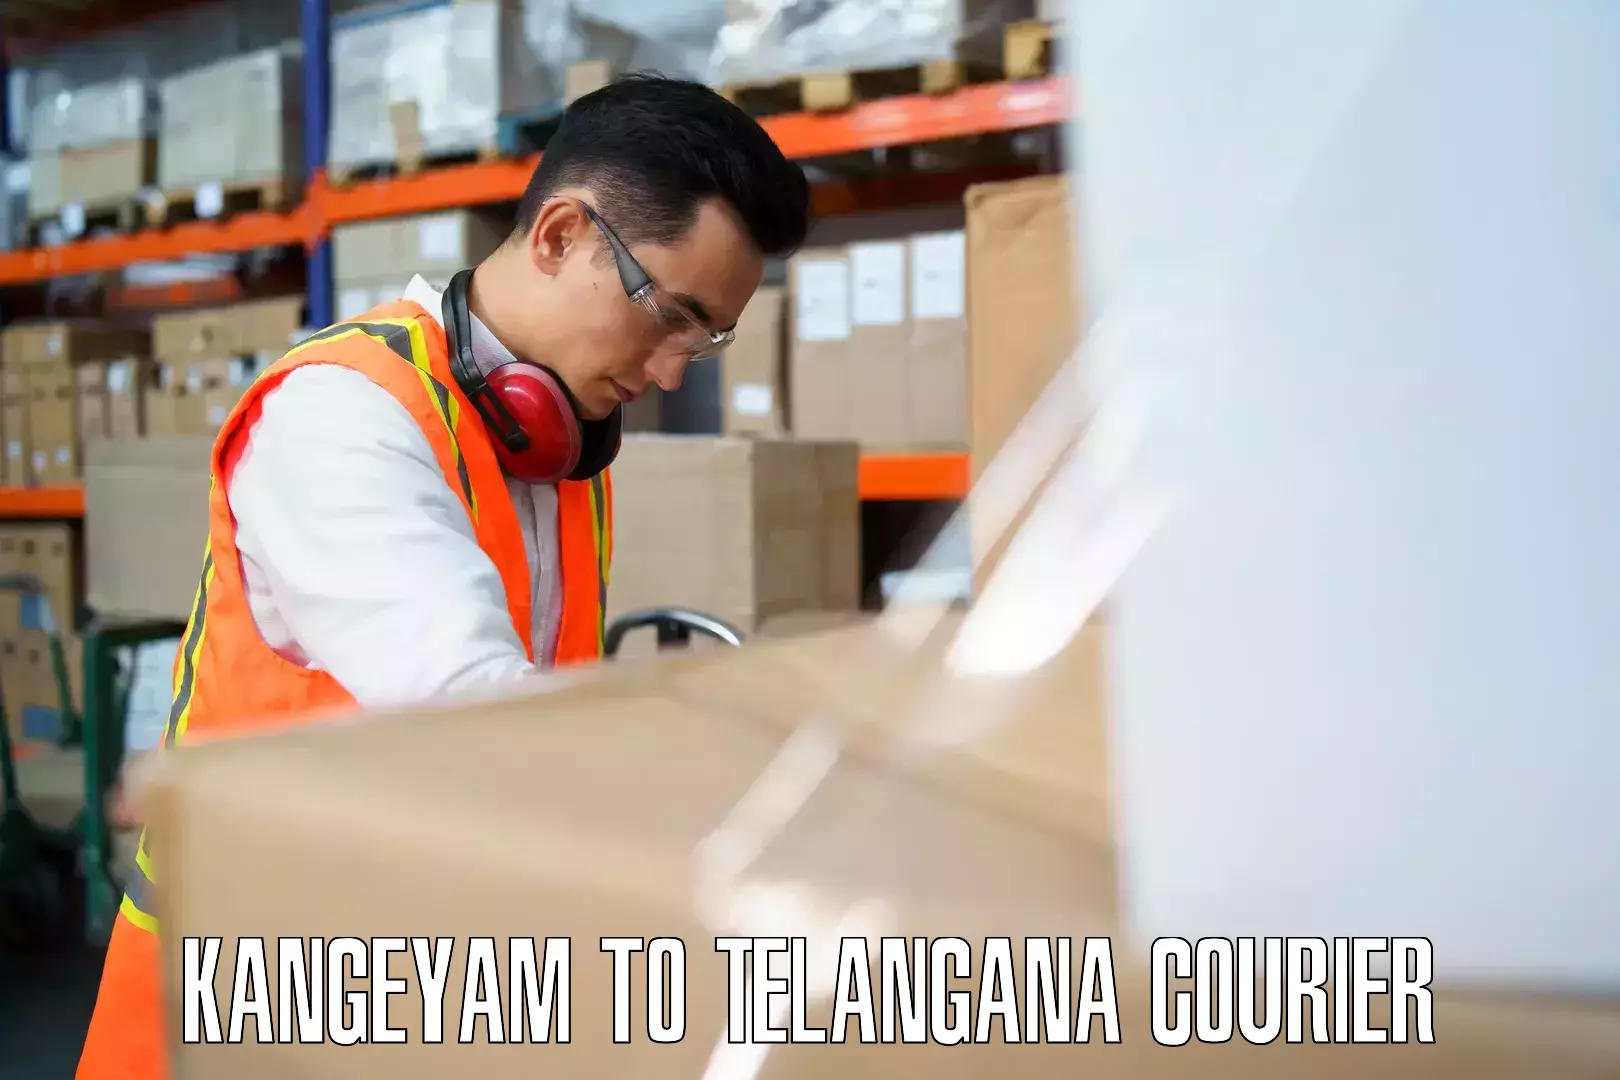 Luggage transfer service Kangeyam to Aswaraopeta